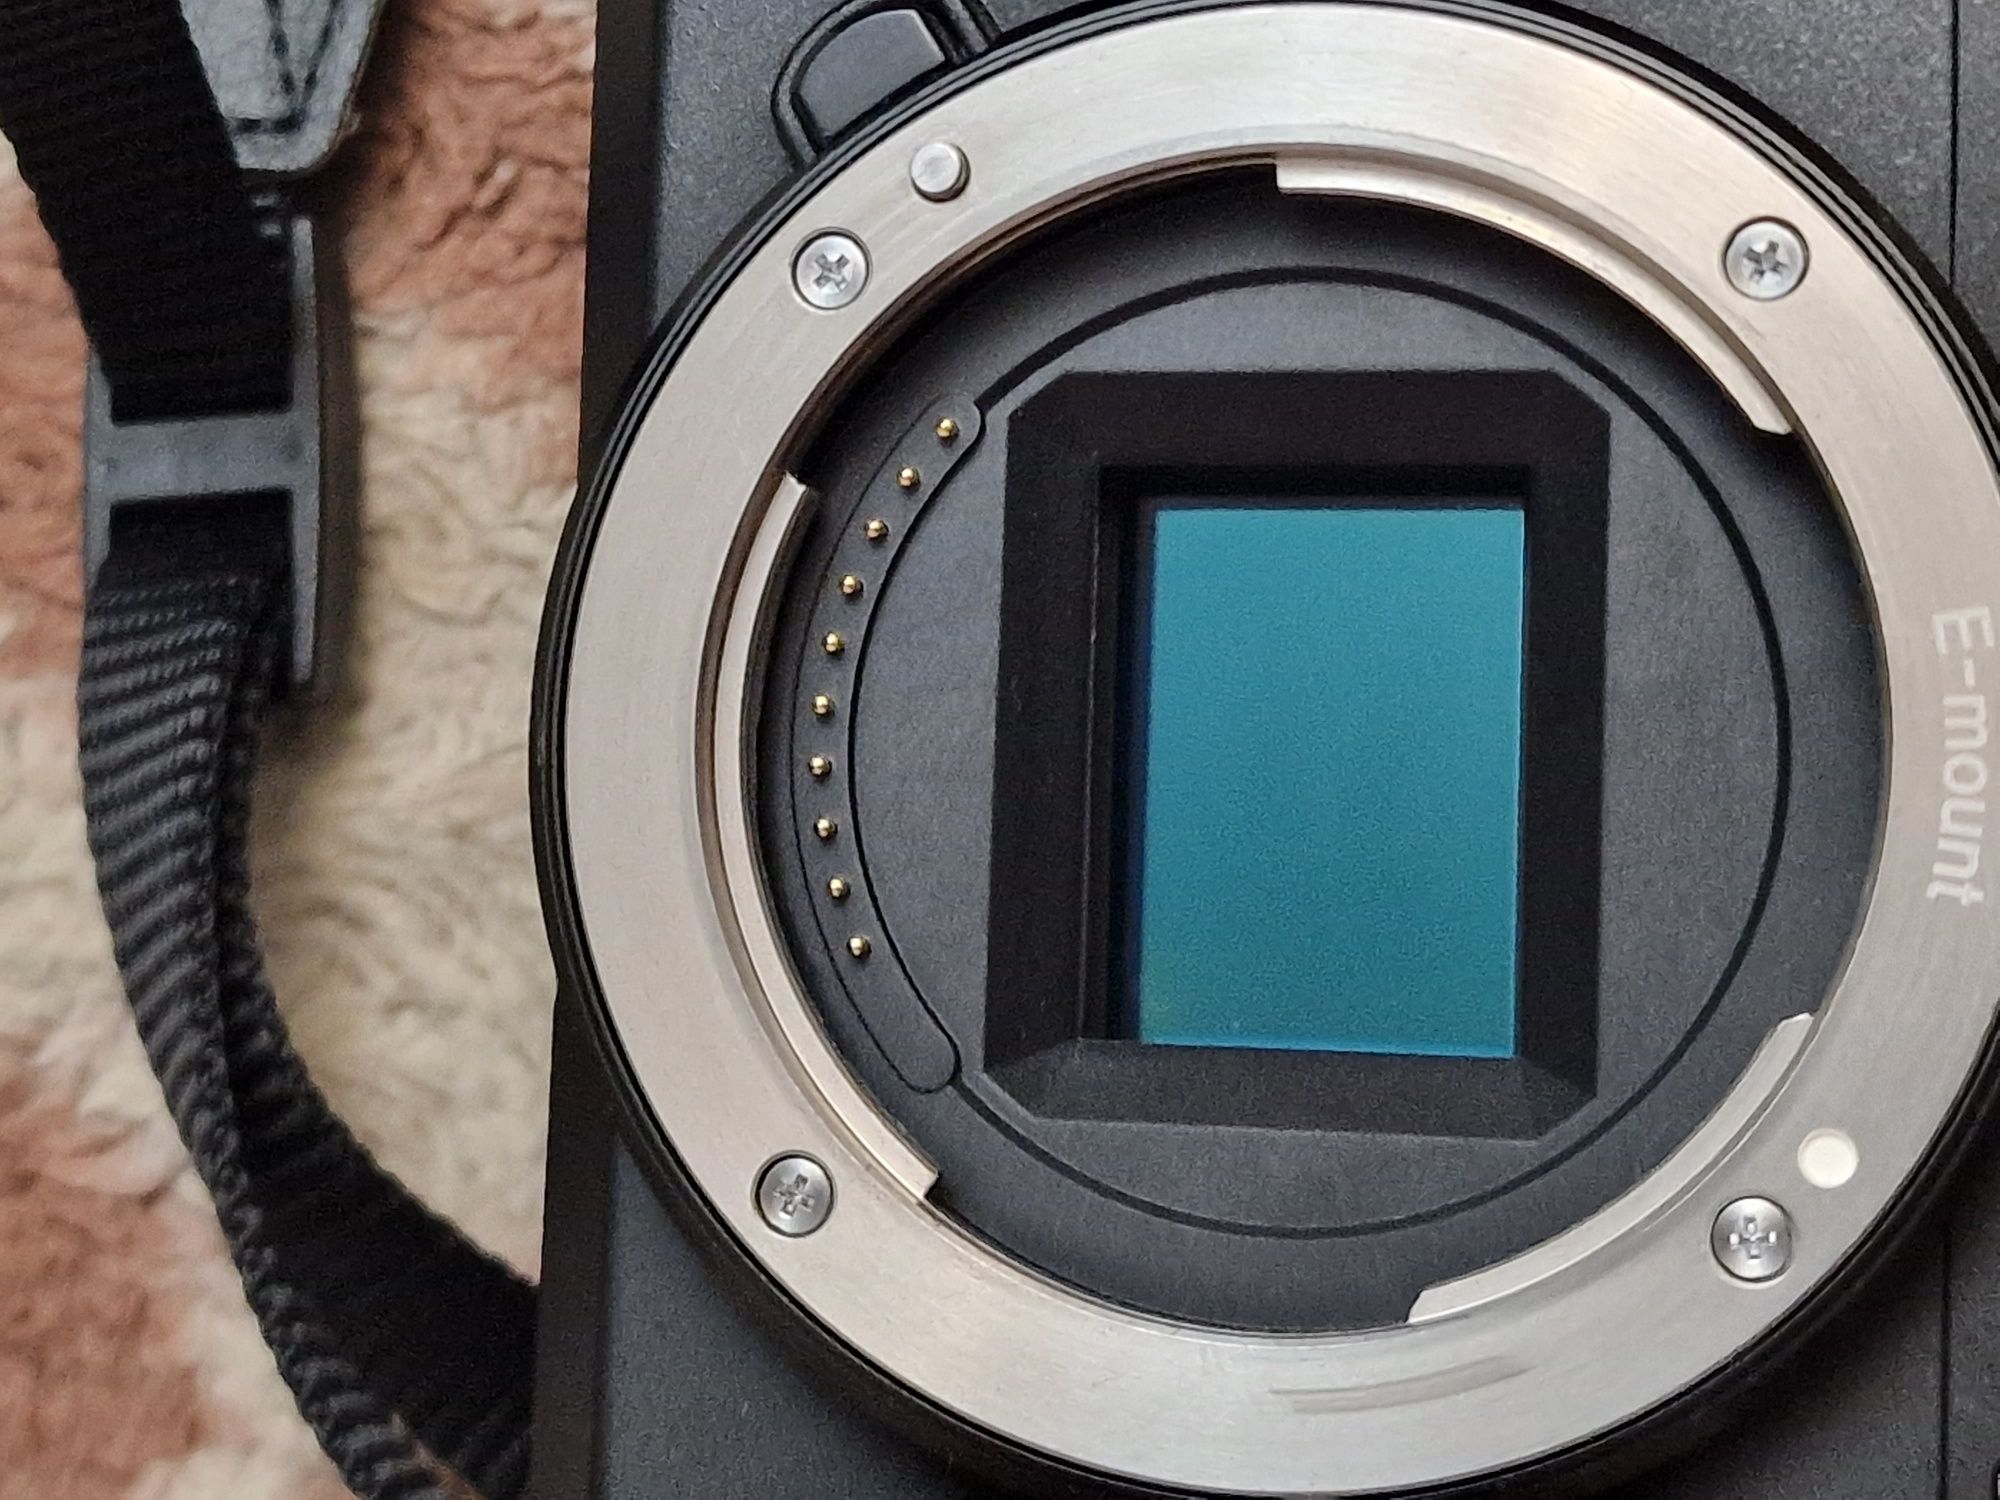 Беззеркальный фотоаппарат Sony A6300 и Китовый объектив